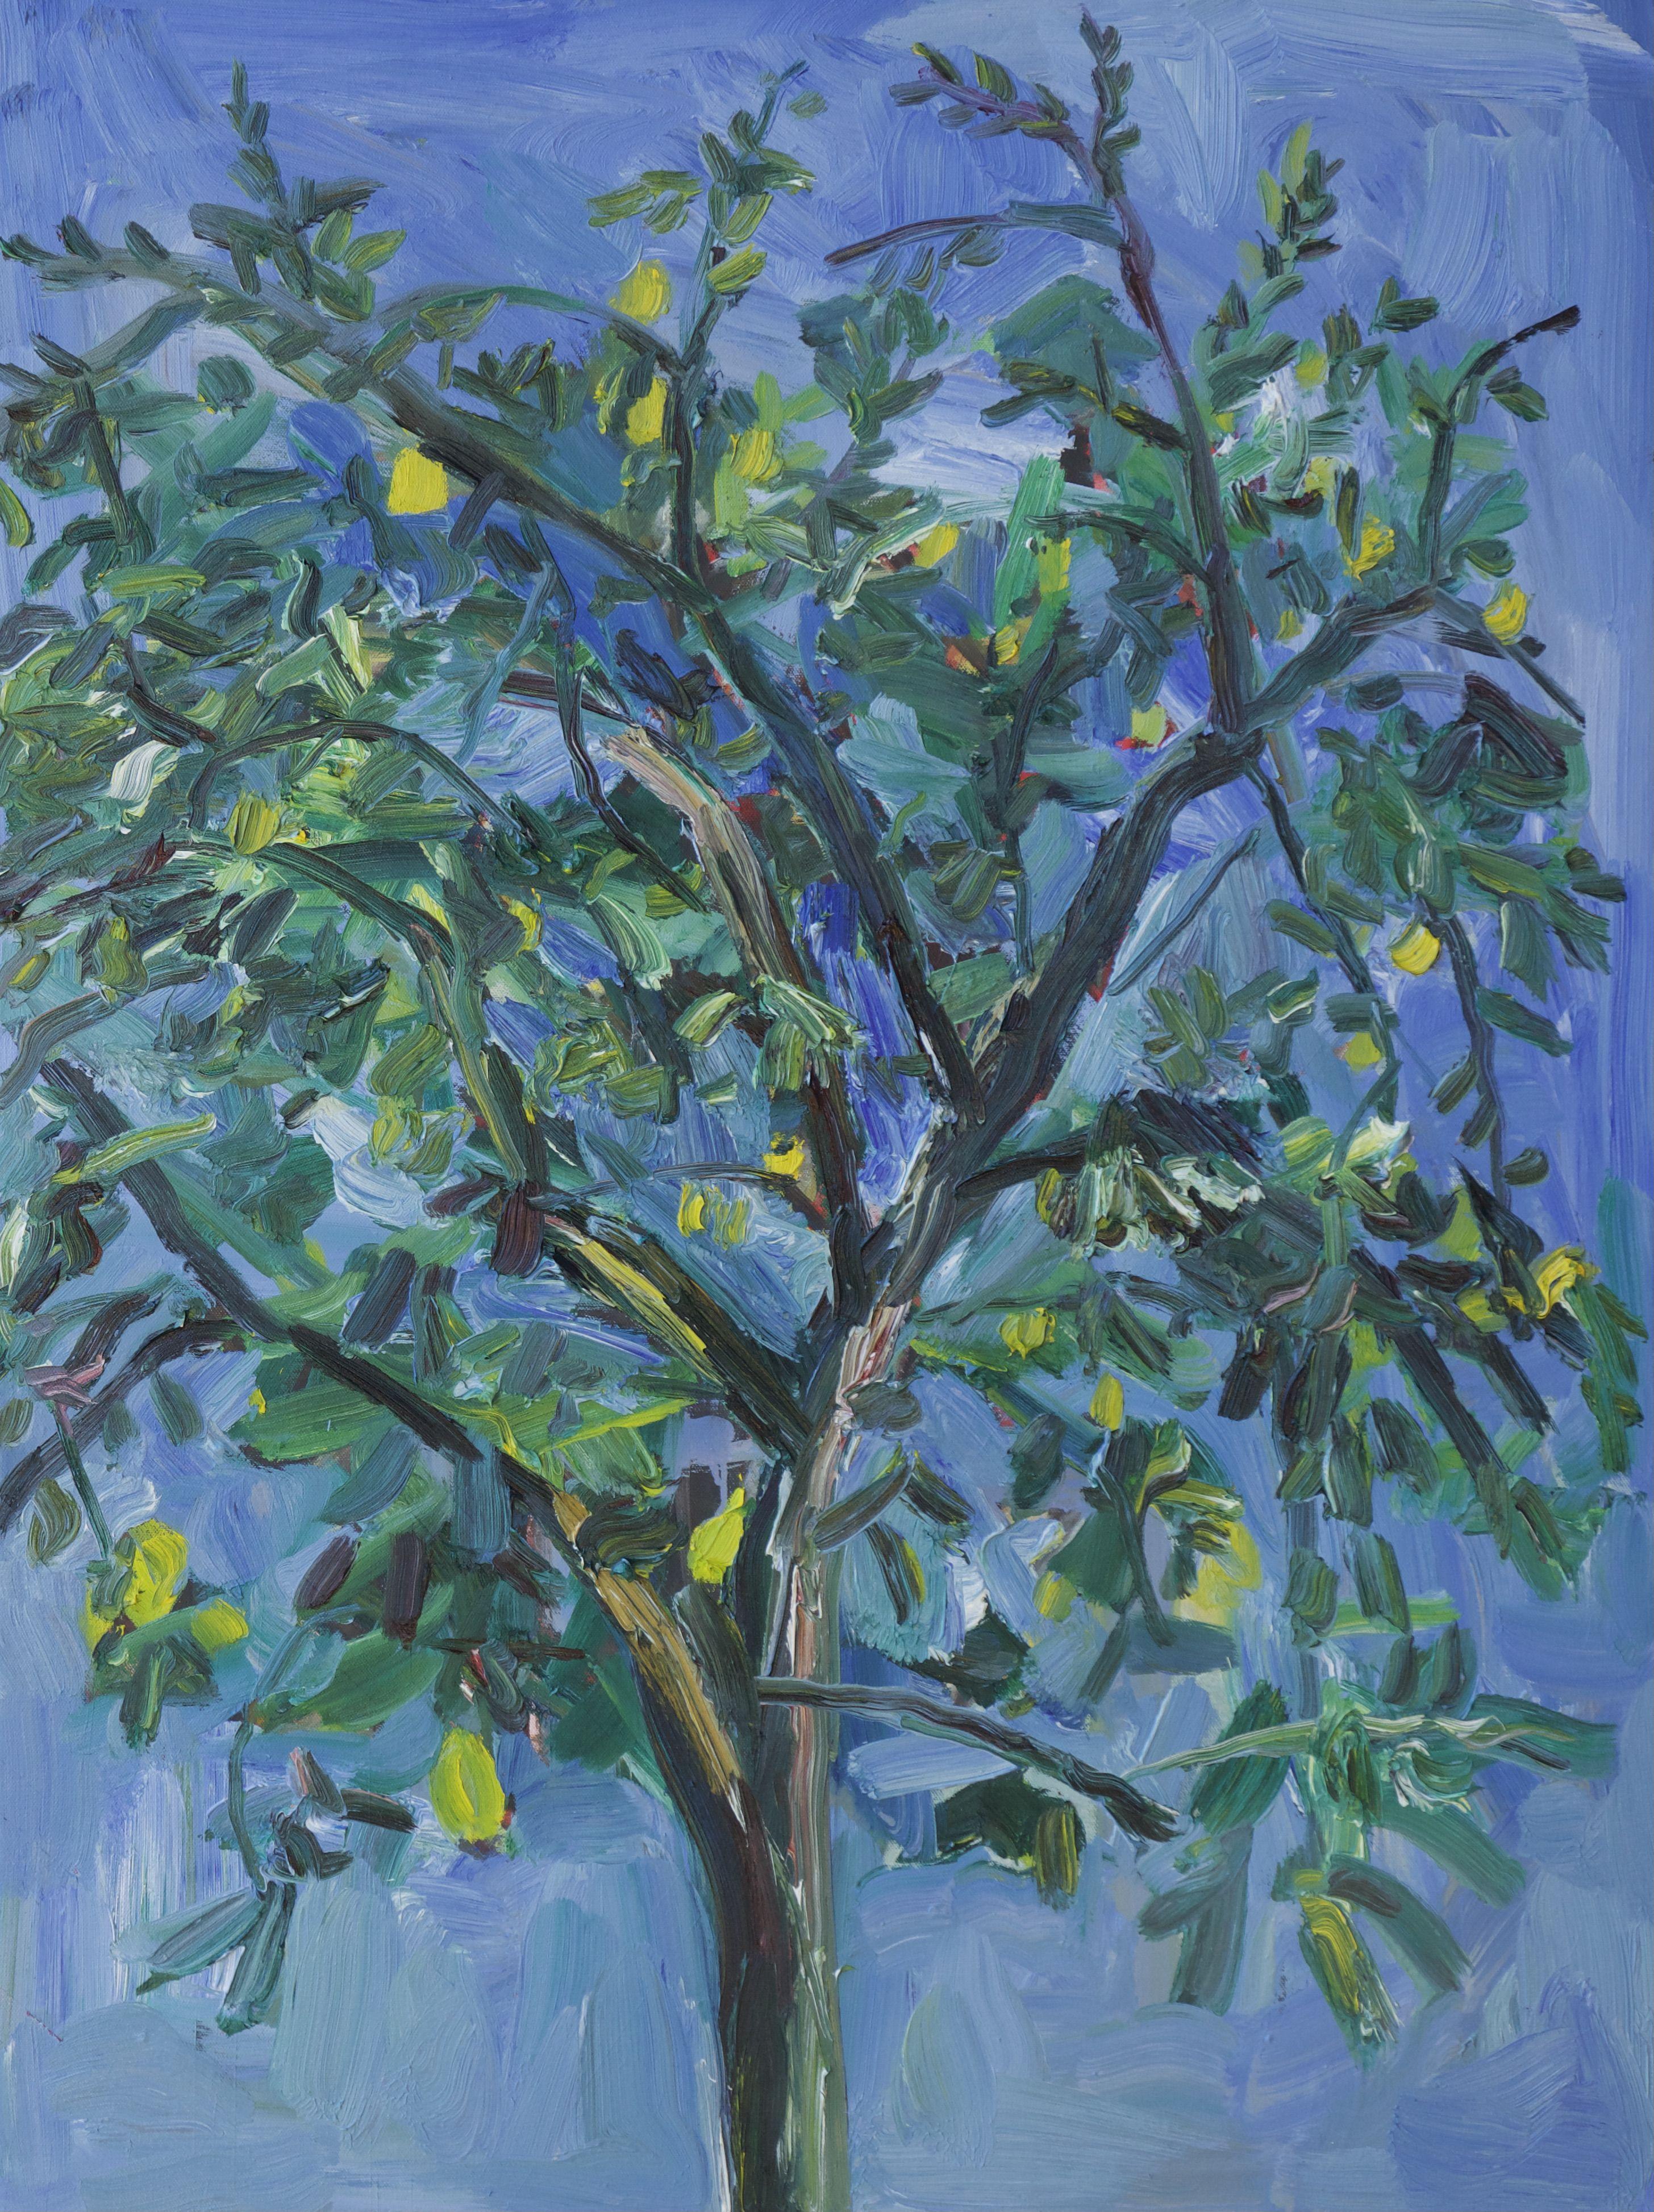 Zitronenbaum in Quarentin, Gemälde, Öl auf Leinwand – Painting von John Kilduff